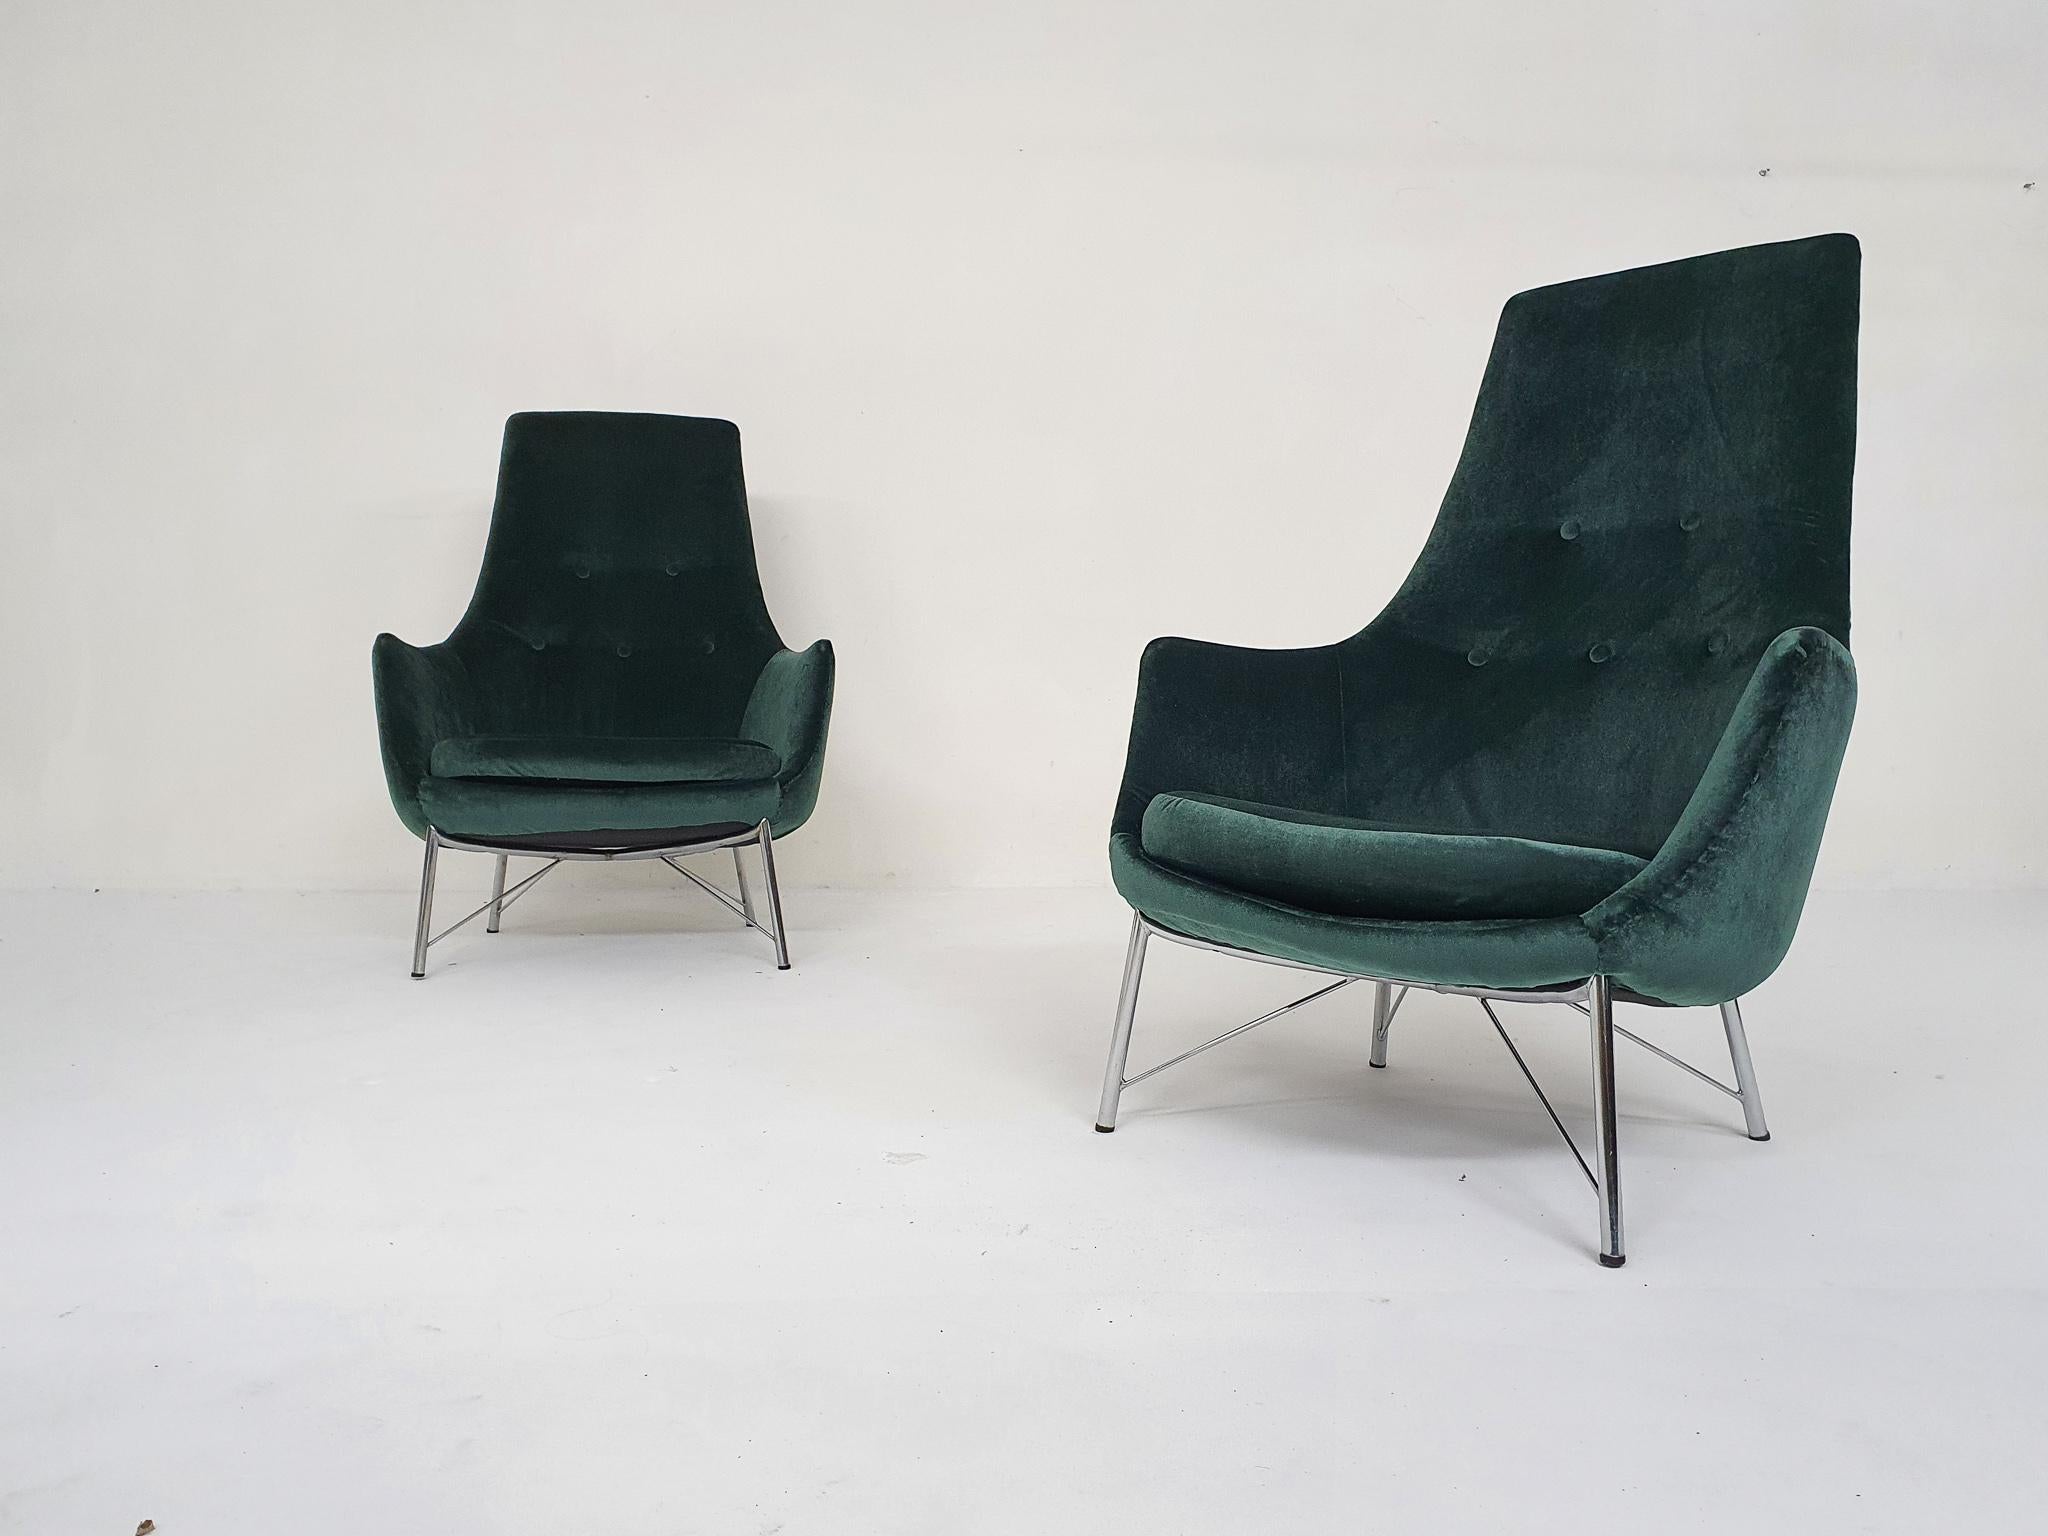 Ensemble de deux chaises longues légères de Karl Ekselius pour Pastoe. Nous avons retapissé les chaises en velours vert.
Sur une base chromée.